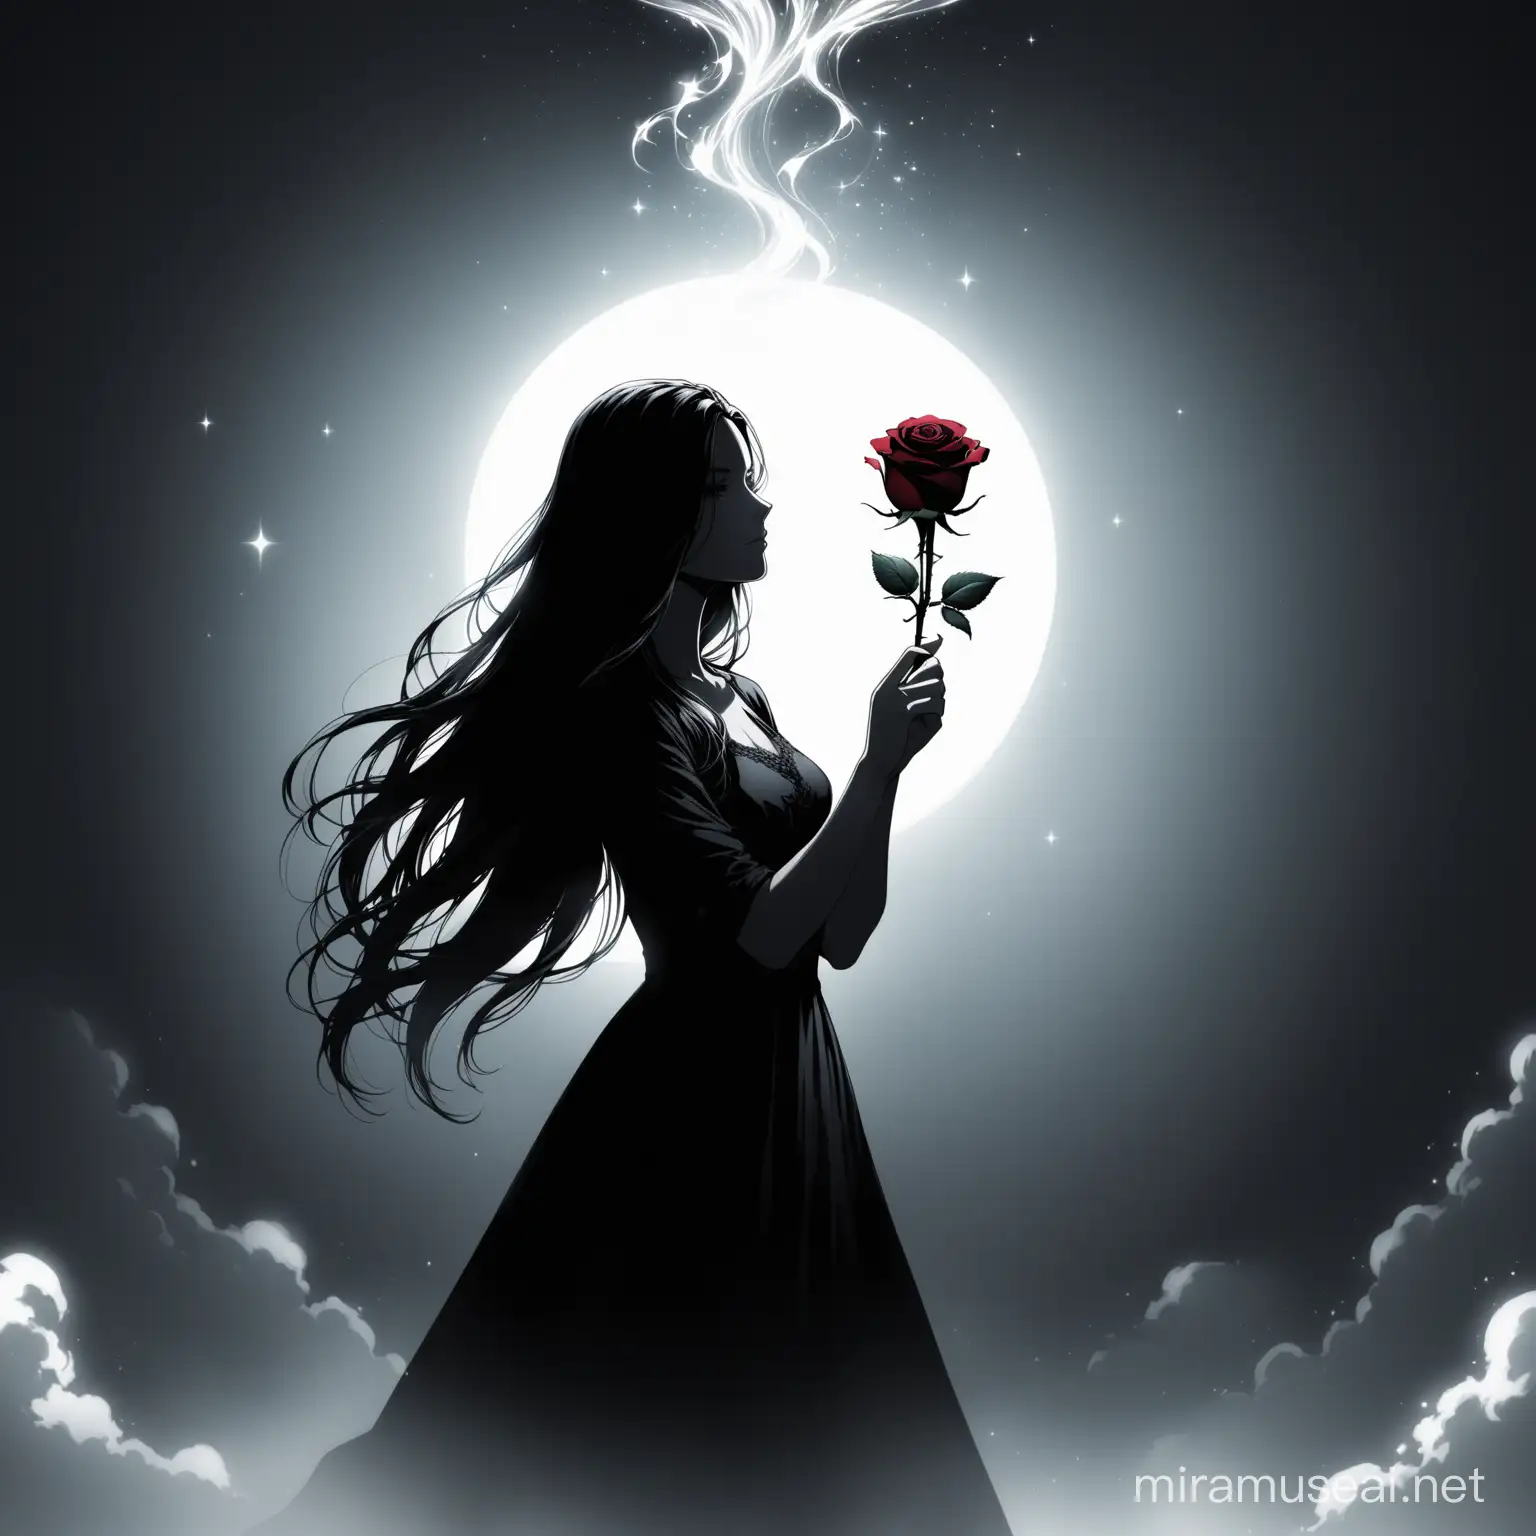 Weißer Himmel Hintergrund, Wallpaper, Magie, Nachdenkende Frau als Schwarzer Schatten mit langen Haaren, Rose in der Hand